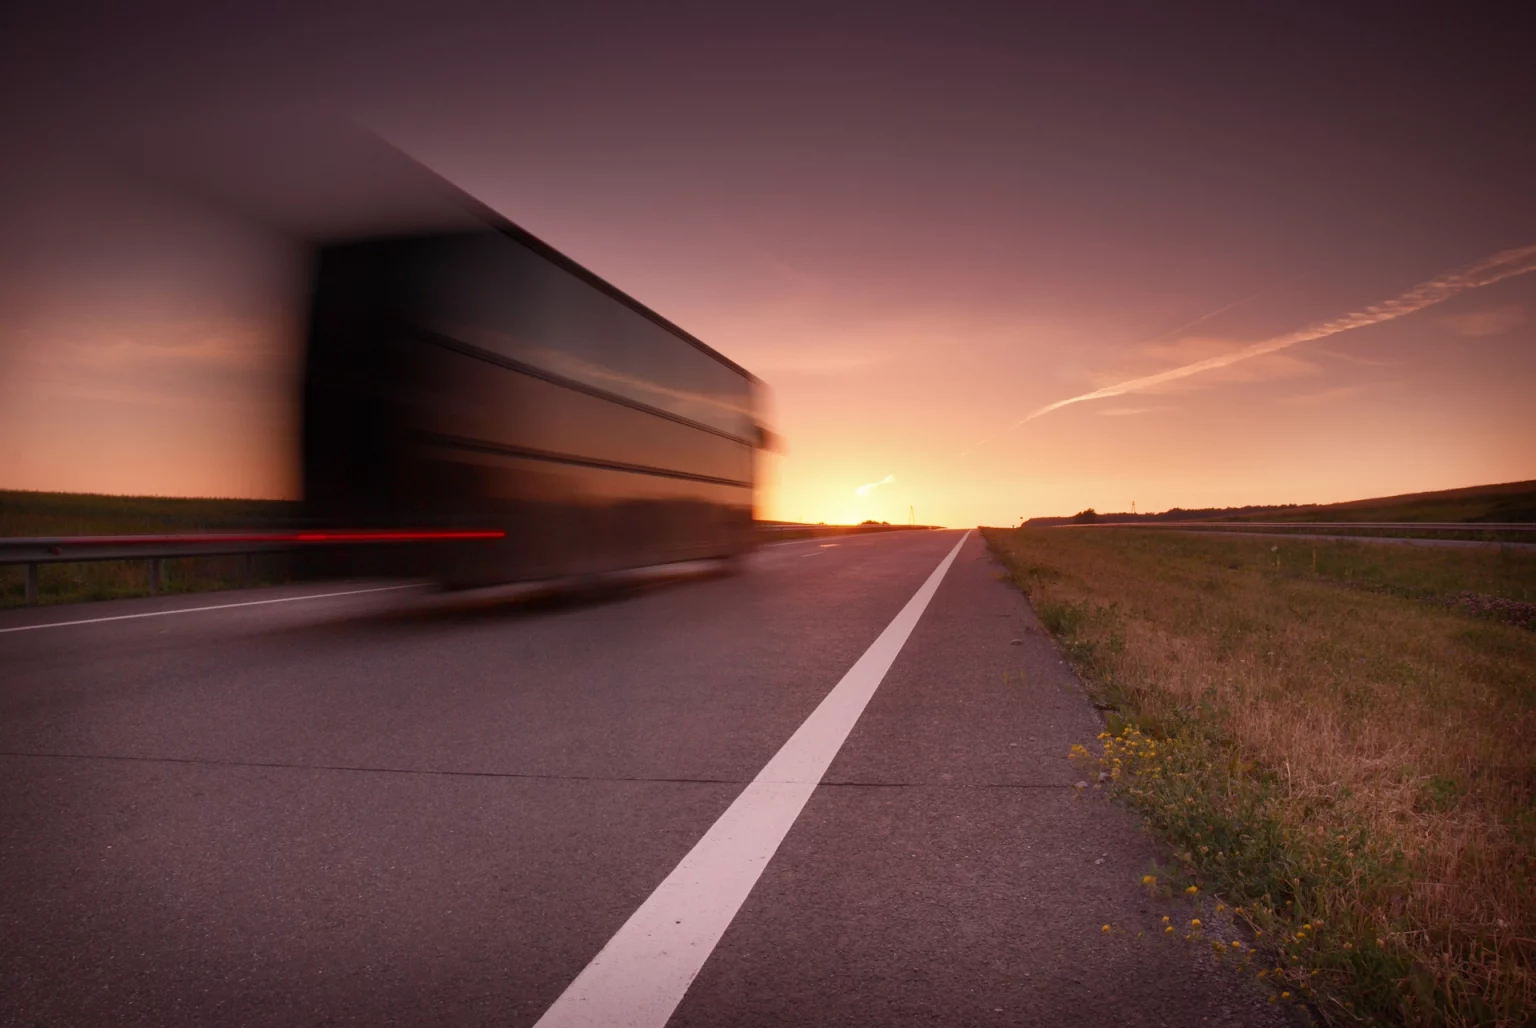 Image en mouvement d'un transport rapide sur autoroute au coucher du soleil, représentant la rapidité et l'efficacité des services de transport.